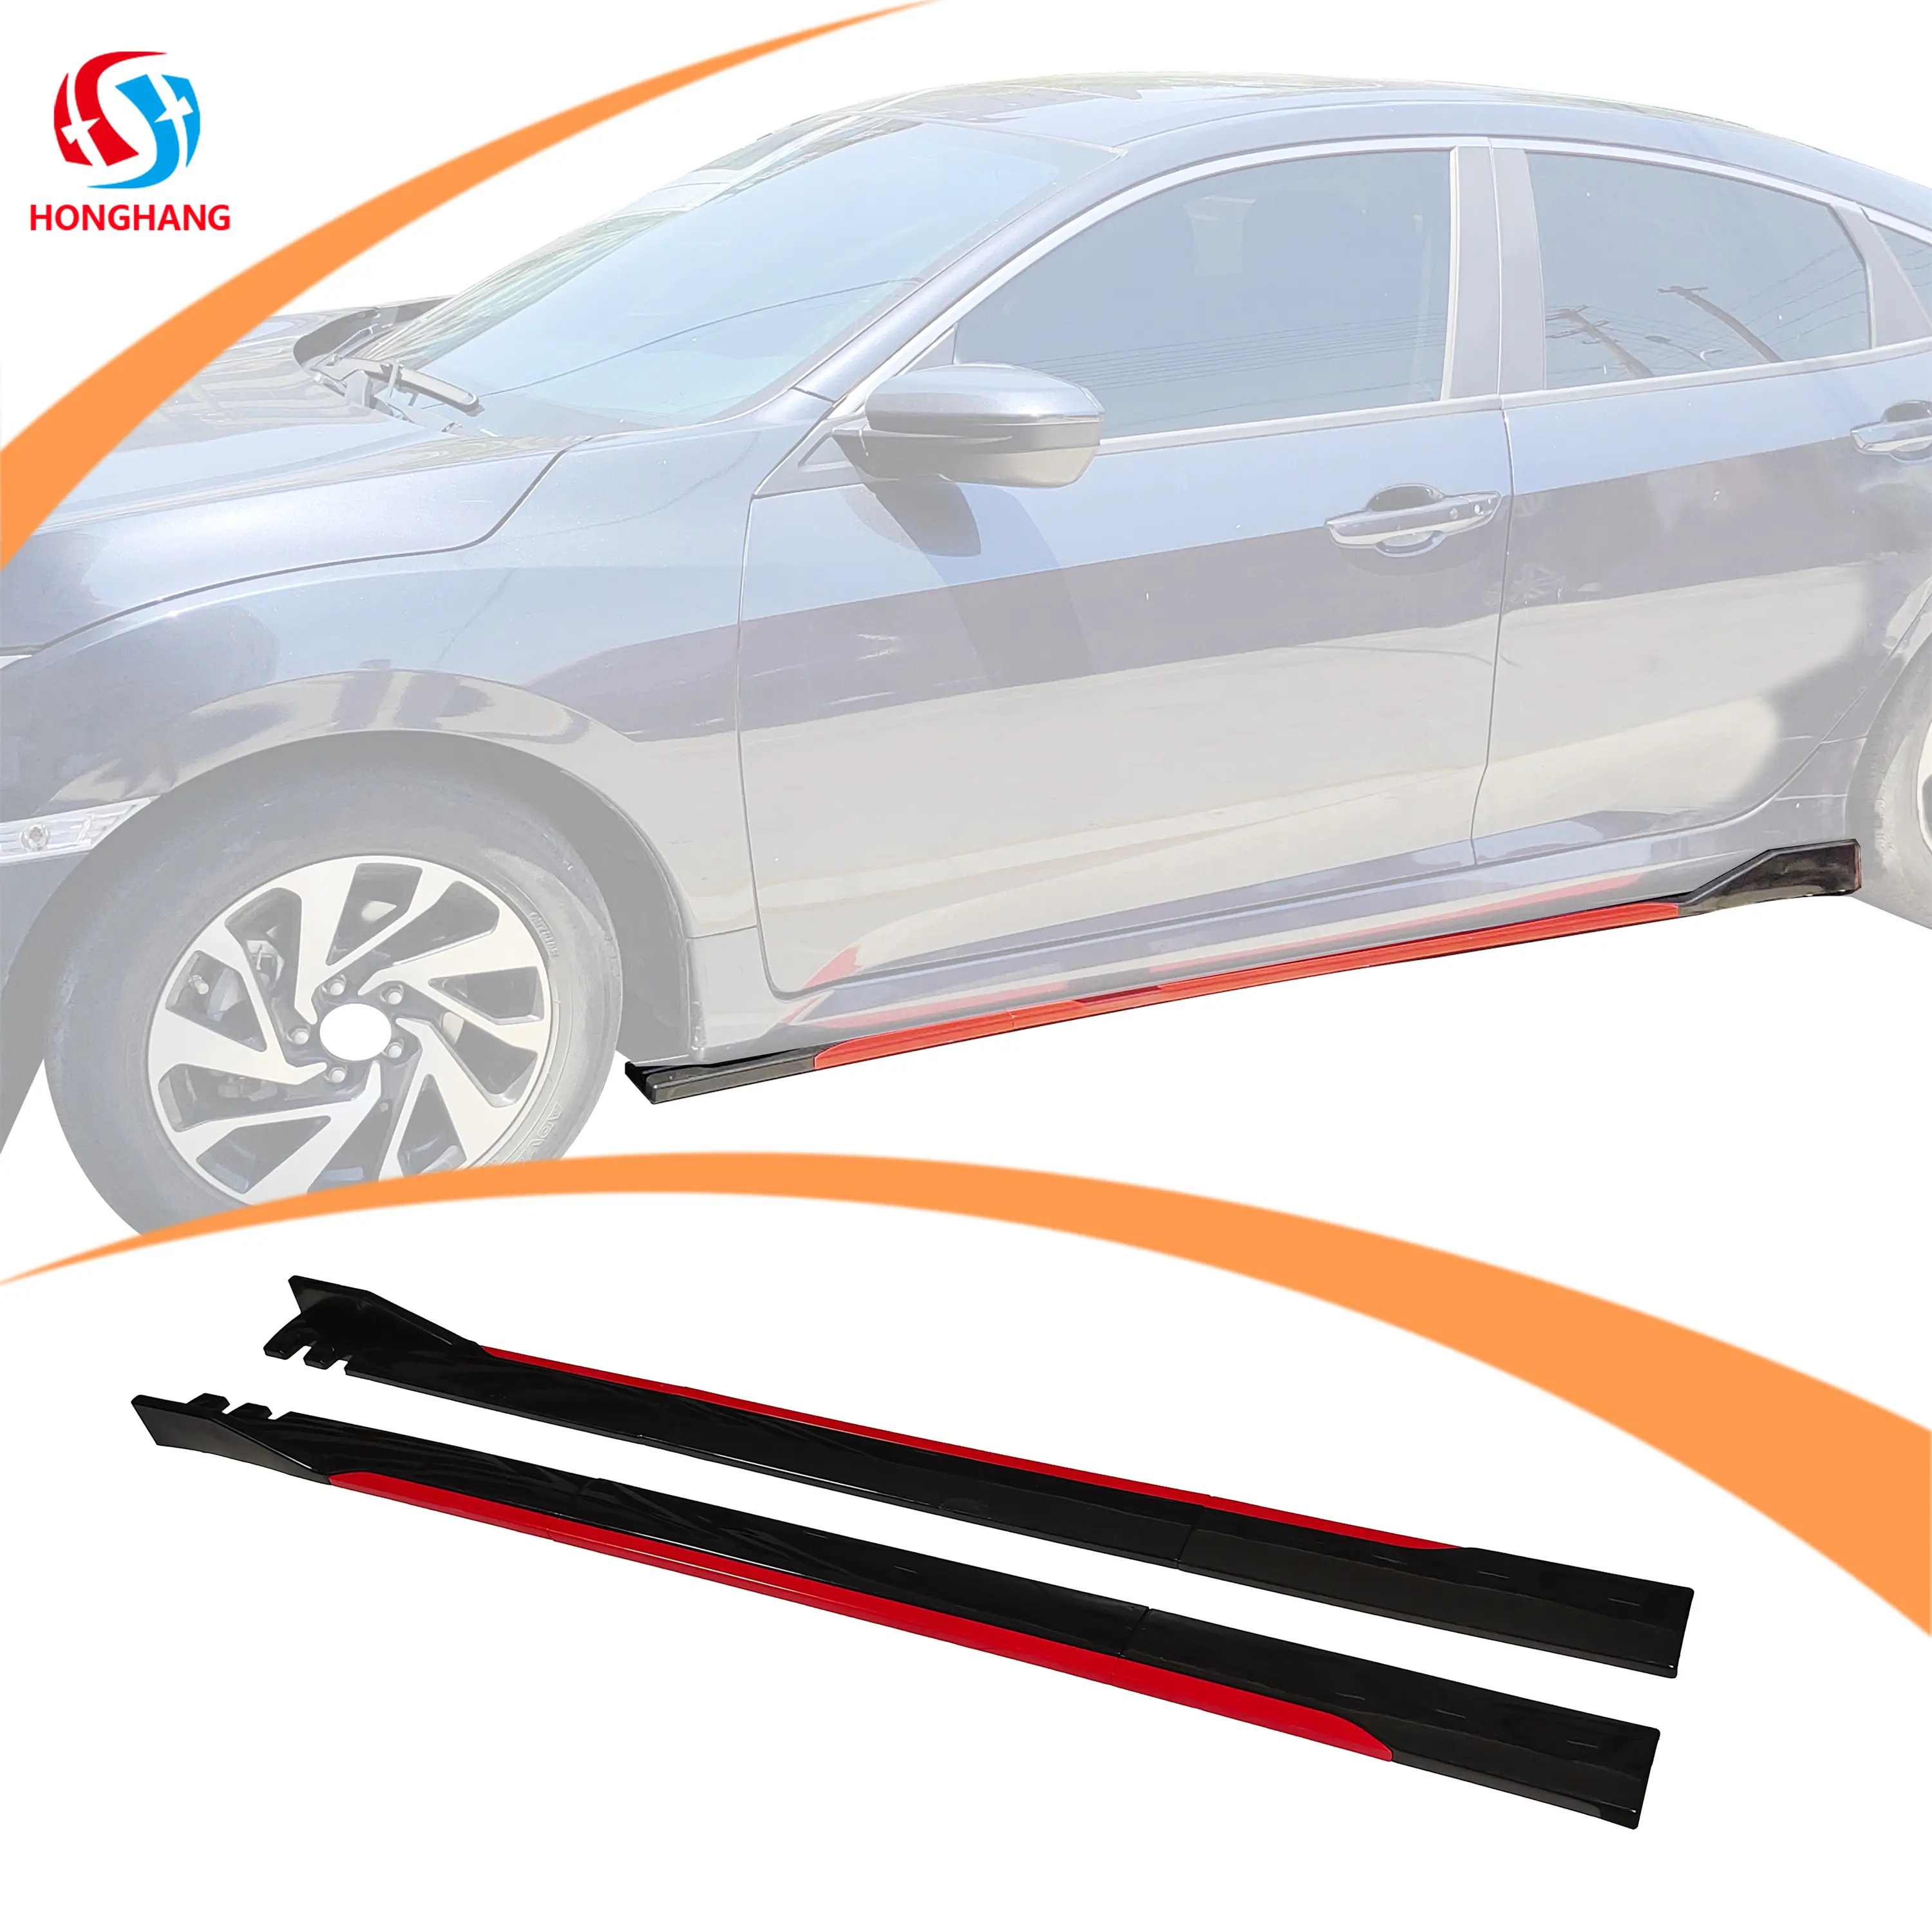 Honghang saia lateral universal de fibra de carbono, para todos os modelos de carro tipo 315